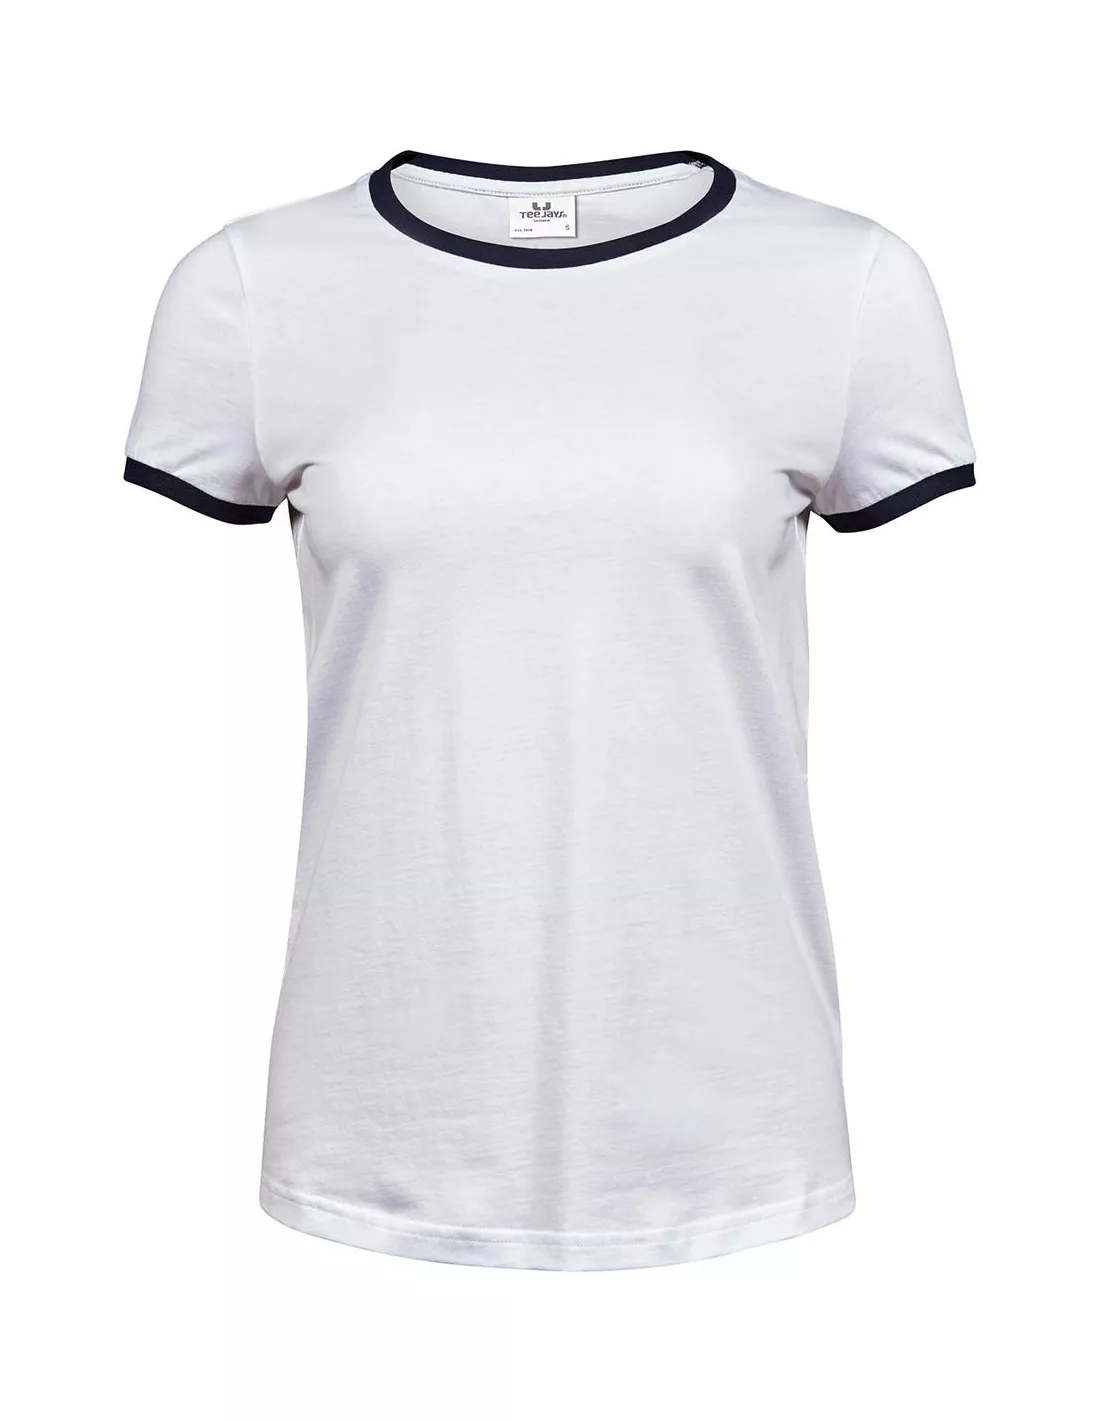 RM Lanzarote camisetas manga corta mujer